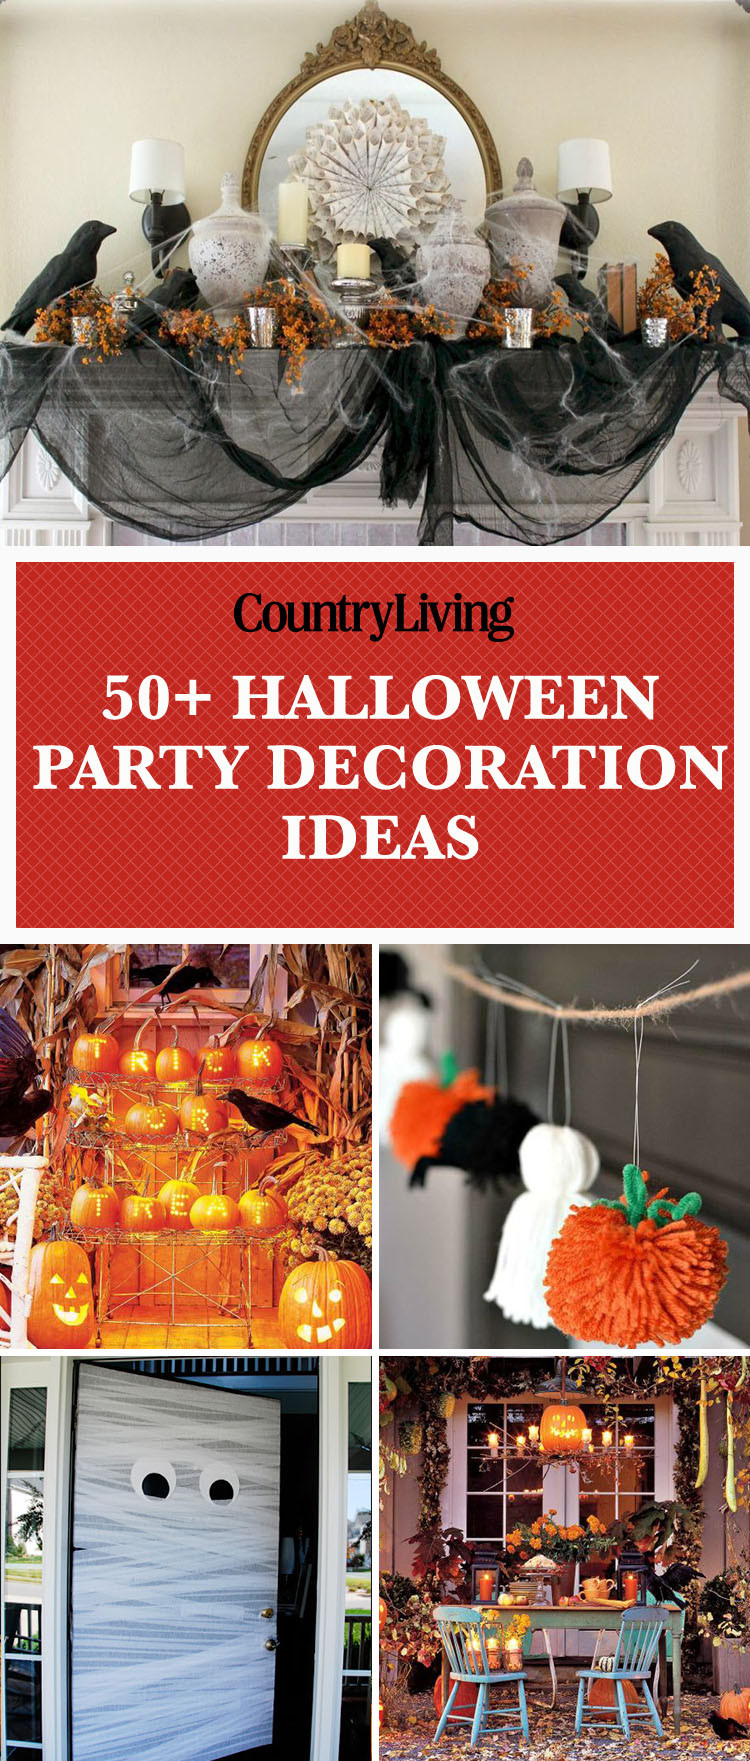 Halloween Party Decoration Ideas
 56 Fun Halloween Party Decorating Ideas Spooky Halloween